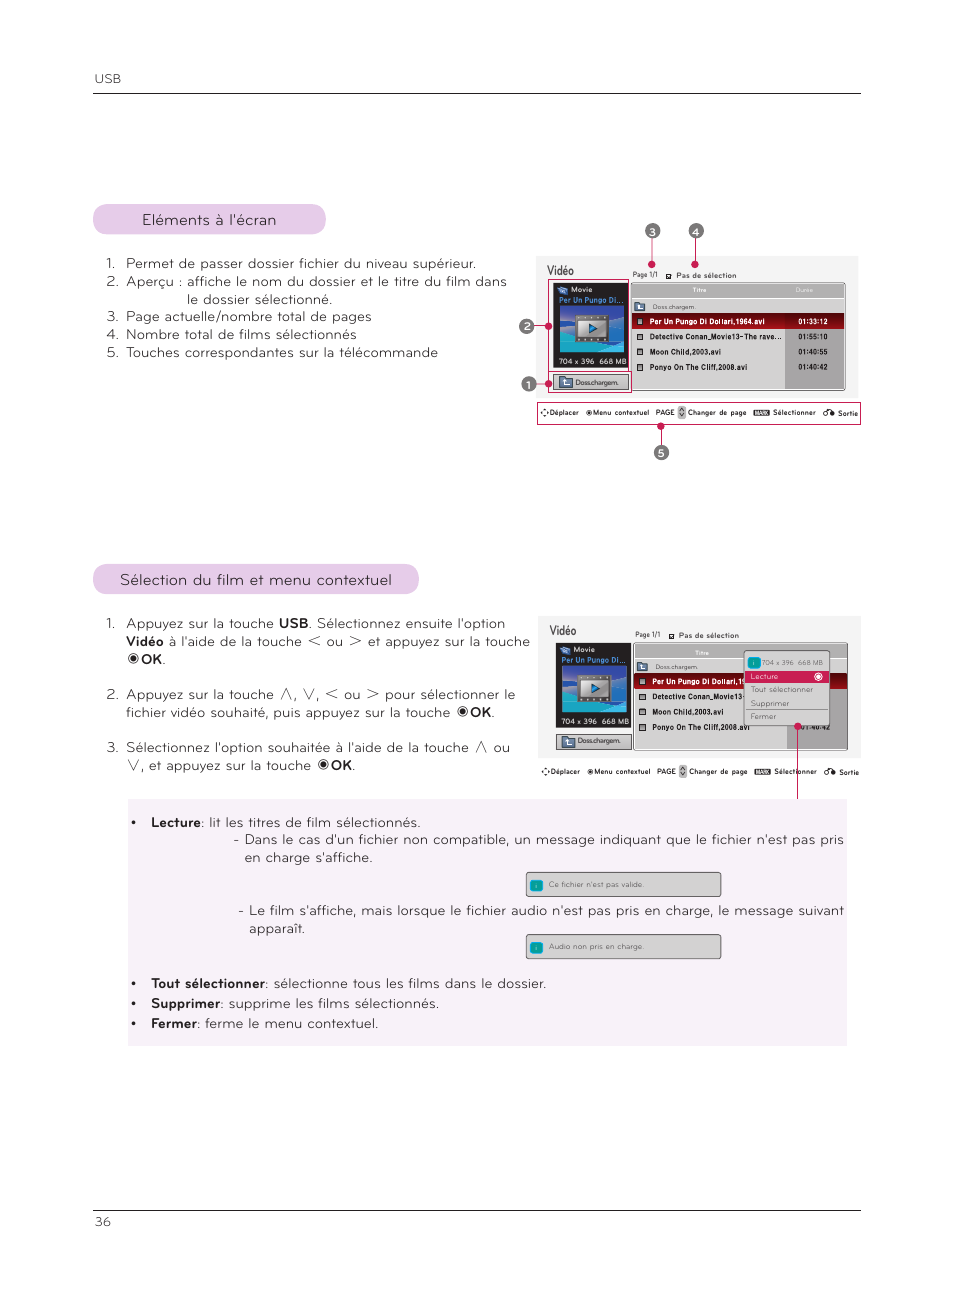 Eléments à l'écran, Sélection du film et menu contextuel | LG HS200G Manuel d'utilisation | Page 36 / 42